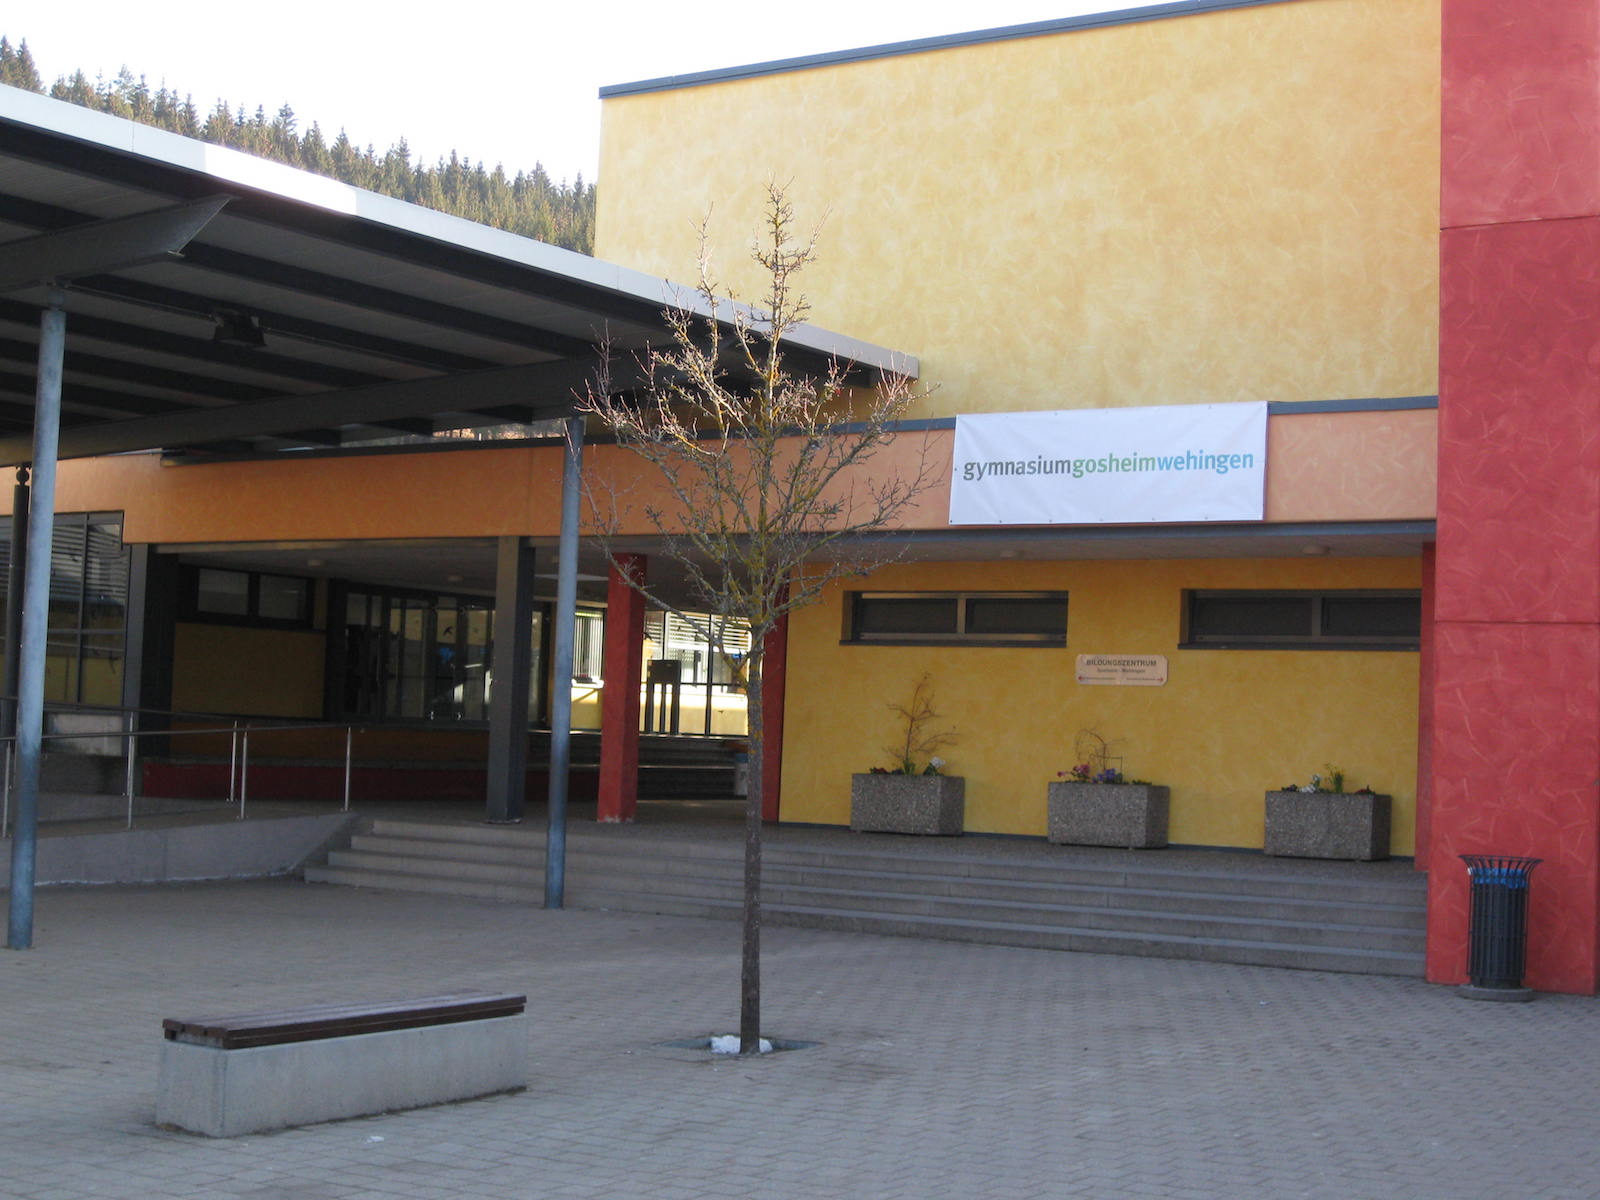 Gymnasium Gosheim-Wehingen